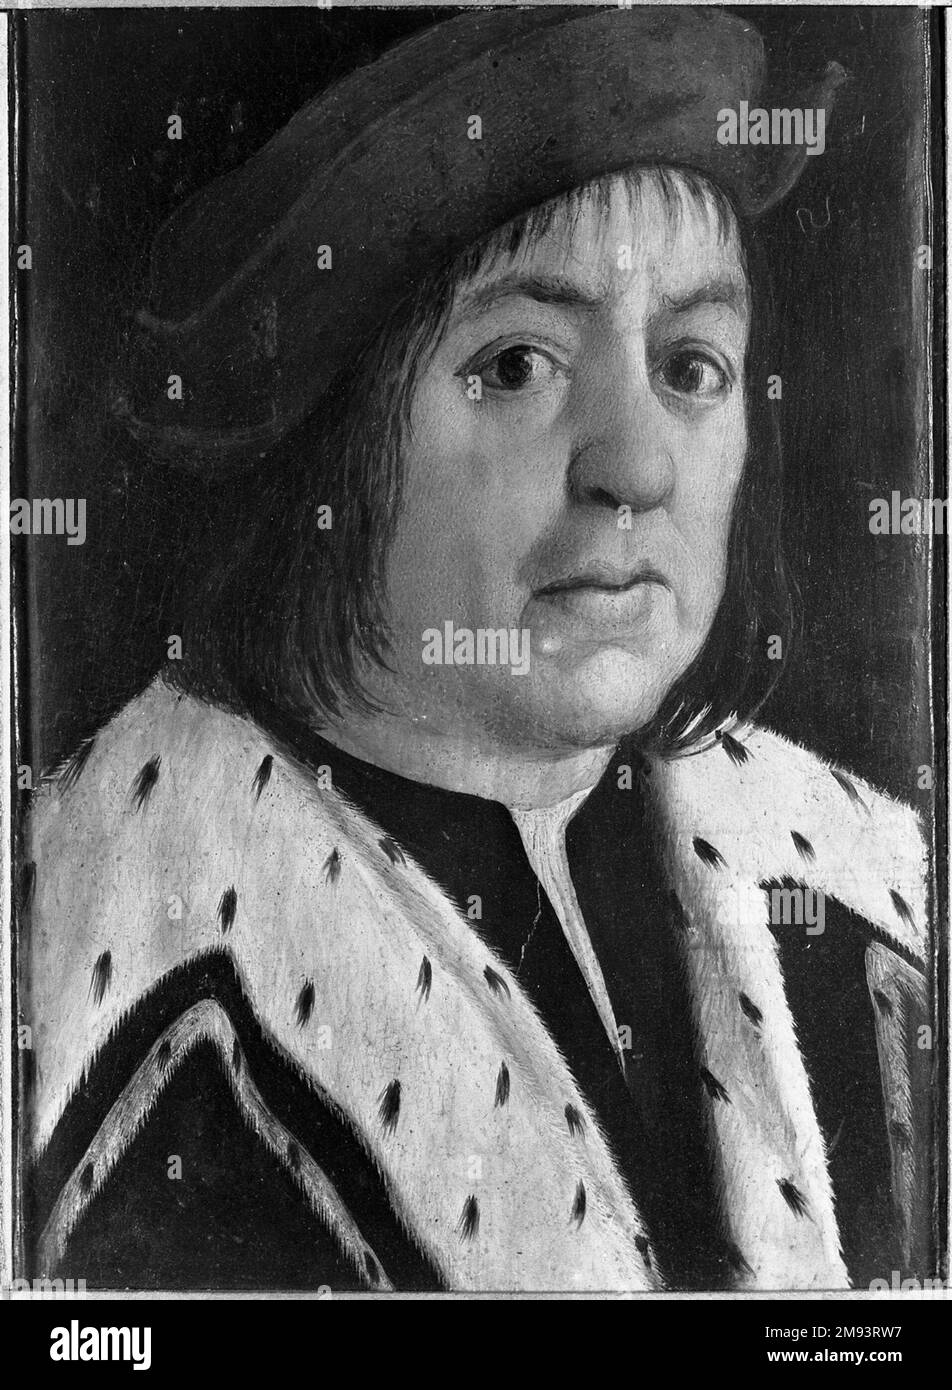 Homme avec un collier Ermine inconnu. Homme avec un collier Ermine, 16th siècle. Huile sur panneau, 10 1/8 x 7 1/2 in. (25,7 x 19,1 cm). Art européen 16th siècle Banque D'Images